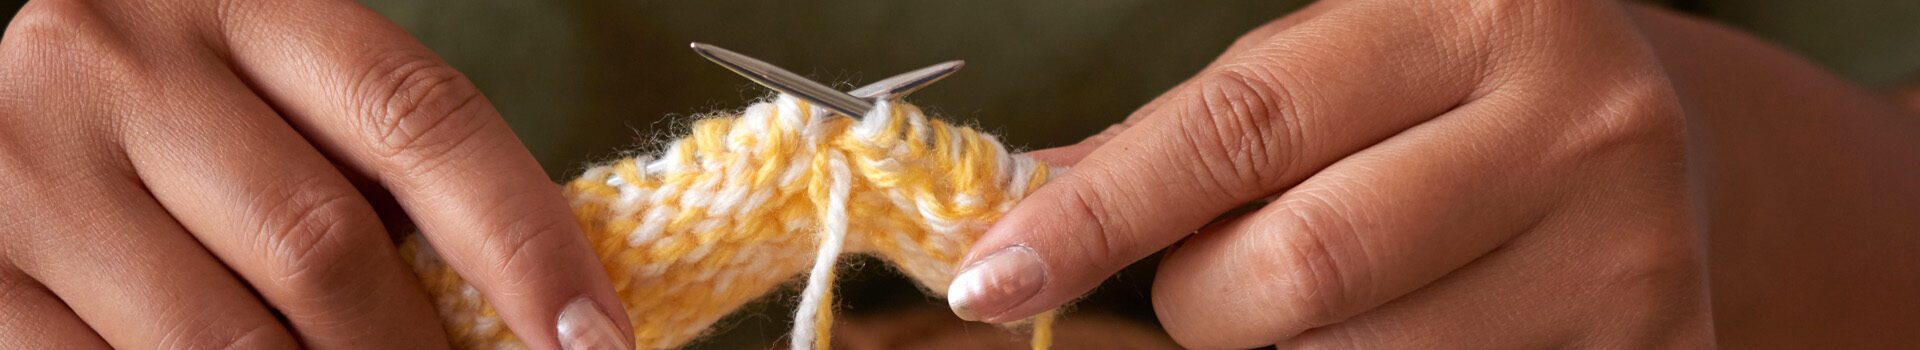 Knitting wool yarn